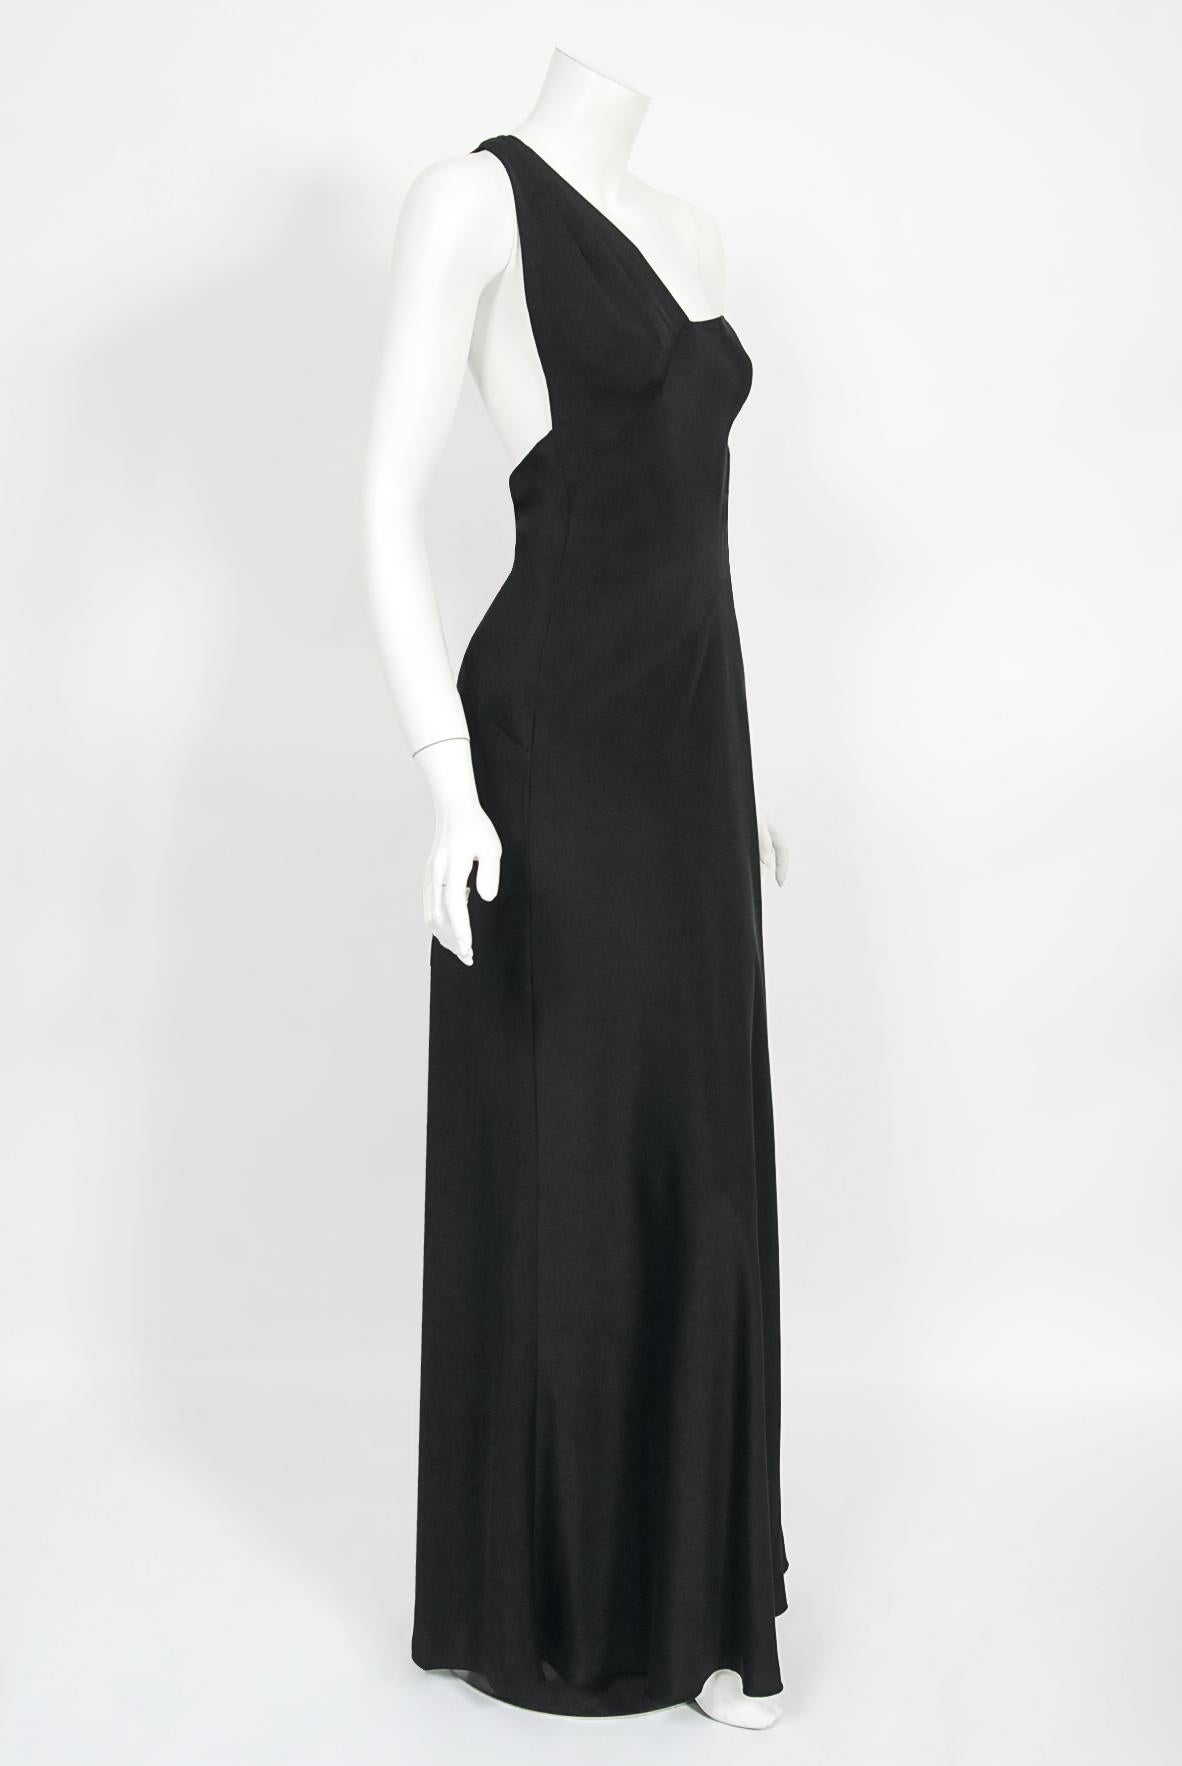 Archival 1994 Philippe Venet Couture Black Silk Asymmetric Cut Out Bias-Cut Gown For Sale 5